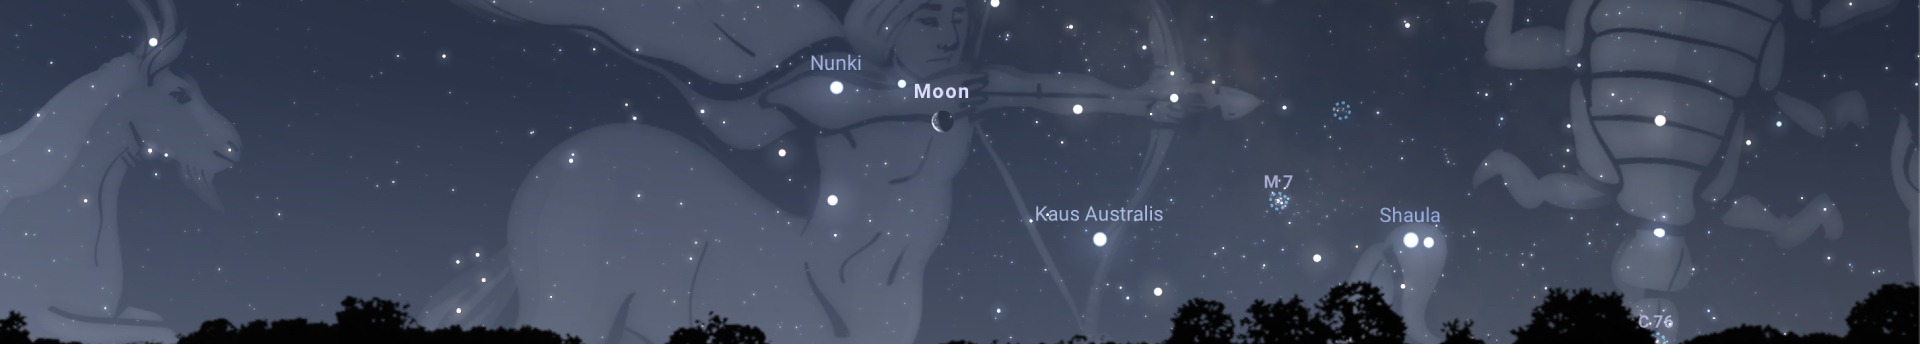 Mélyrepülésben a Hold: kísérőnk március közepén egymás után közelíti meg az égi egyenlítőtől délre eső égbolt látványosságait! 